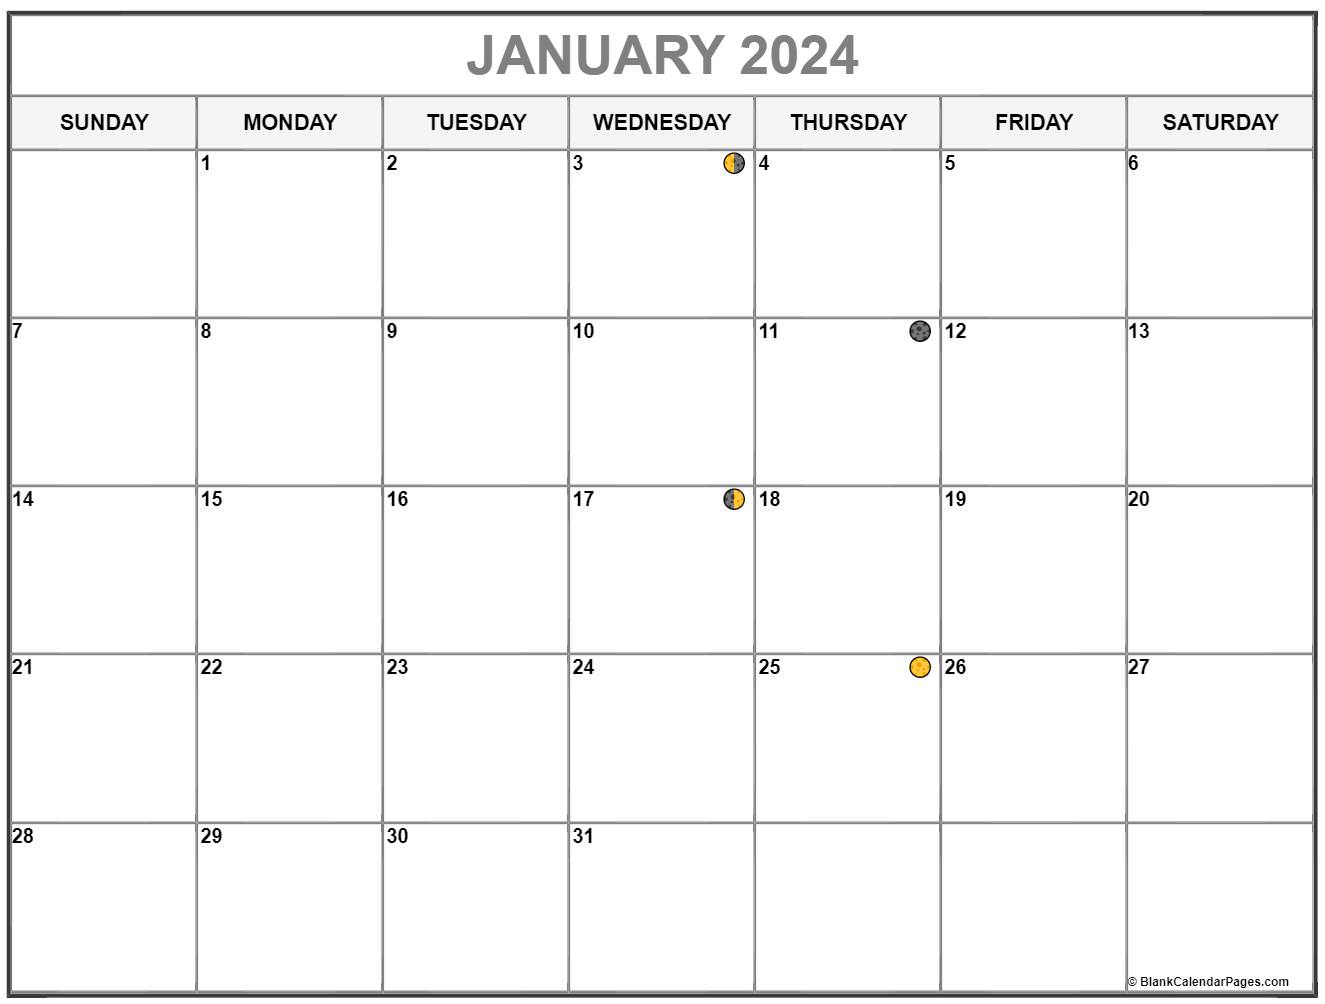 Moon Calendar July 2022 January 2022 Lunar Calendar | Moon Phase Calendar